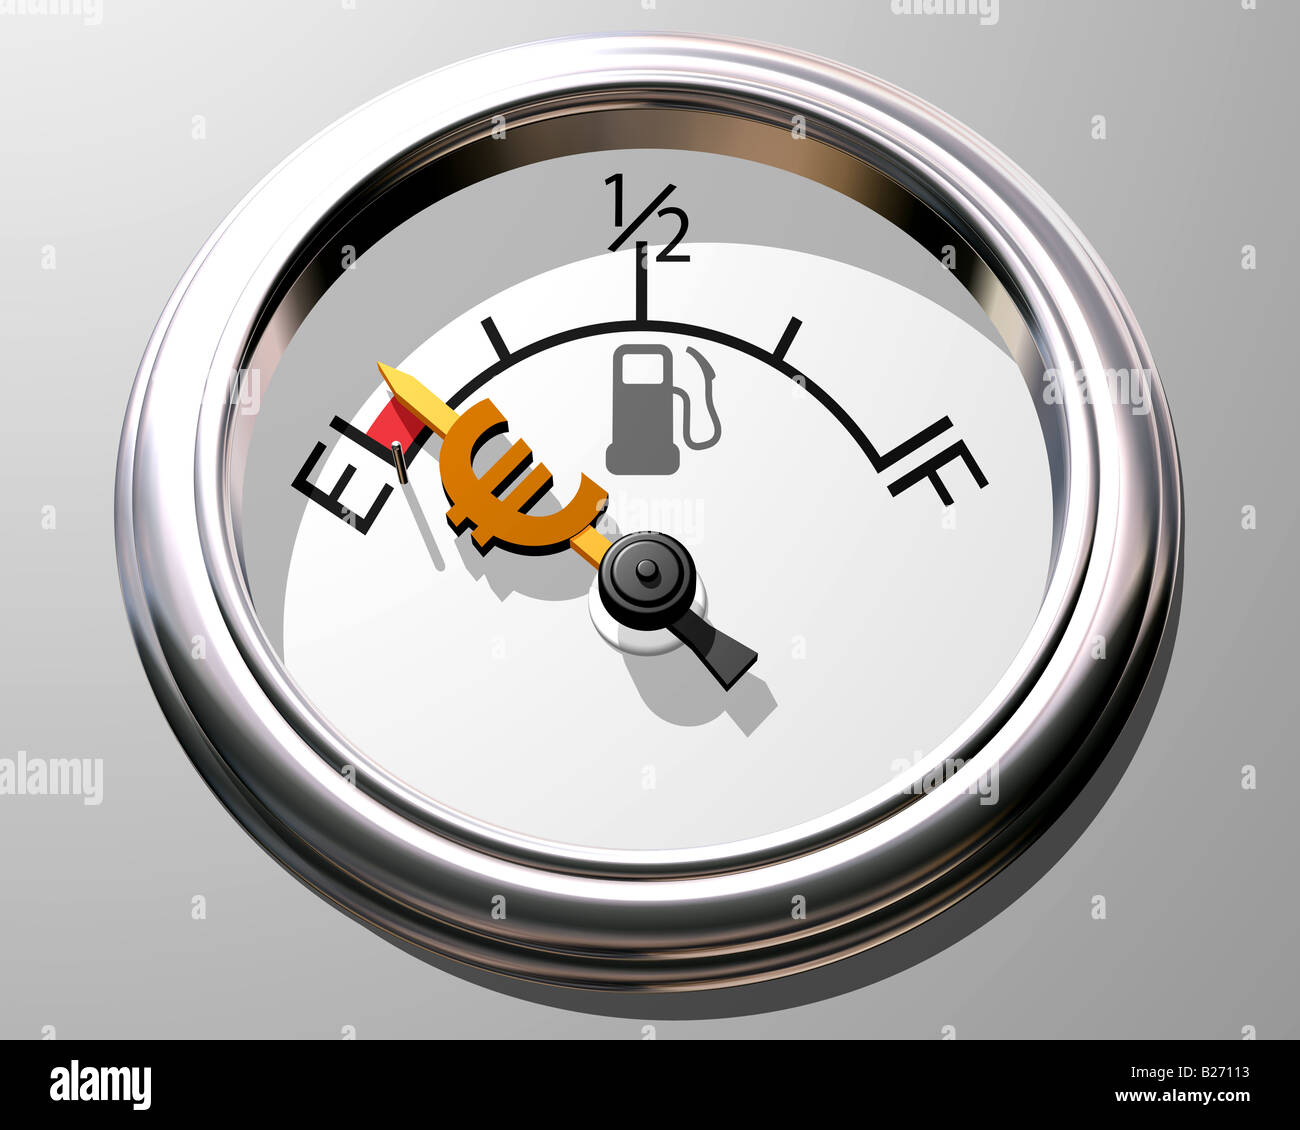 Pfund-Zeichen auf einem Auto Kraftstoff Manometer zeigt leer  Stockfotografie - Alamy